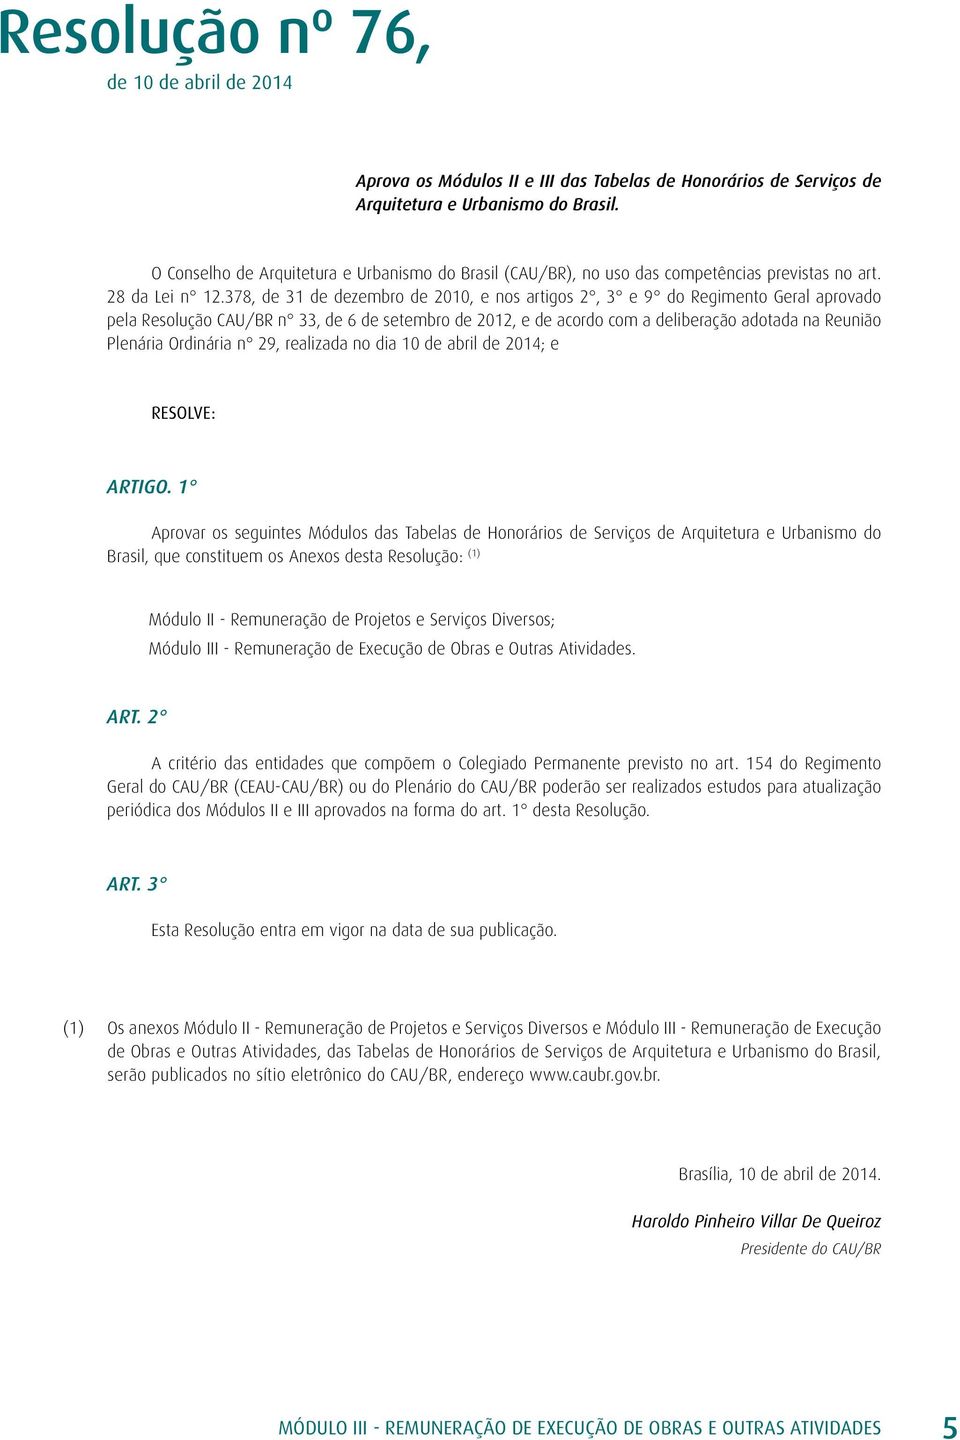 378, de 31 de dezembro de 2010, e nos artigos 2, 3 e 9 do Regimento Geral aprovado pela Resolução CAU/BR n 33, de 6 de setembro de 2012, e de acordo com a deliberação adotada na Reunião Plenária